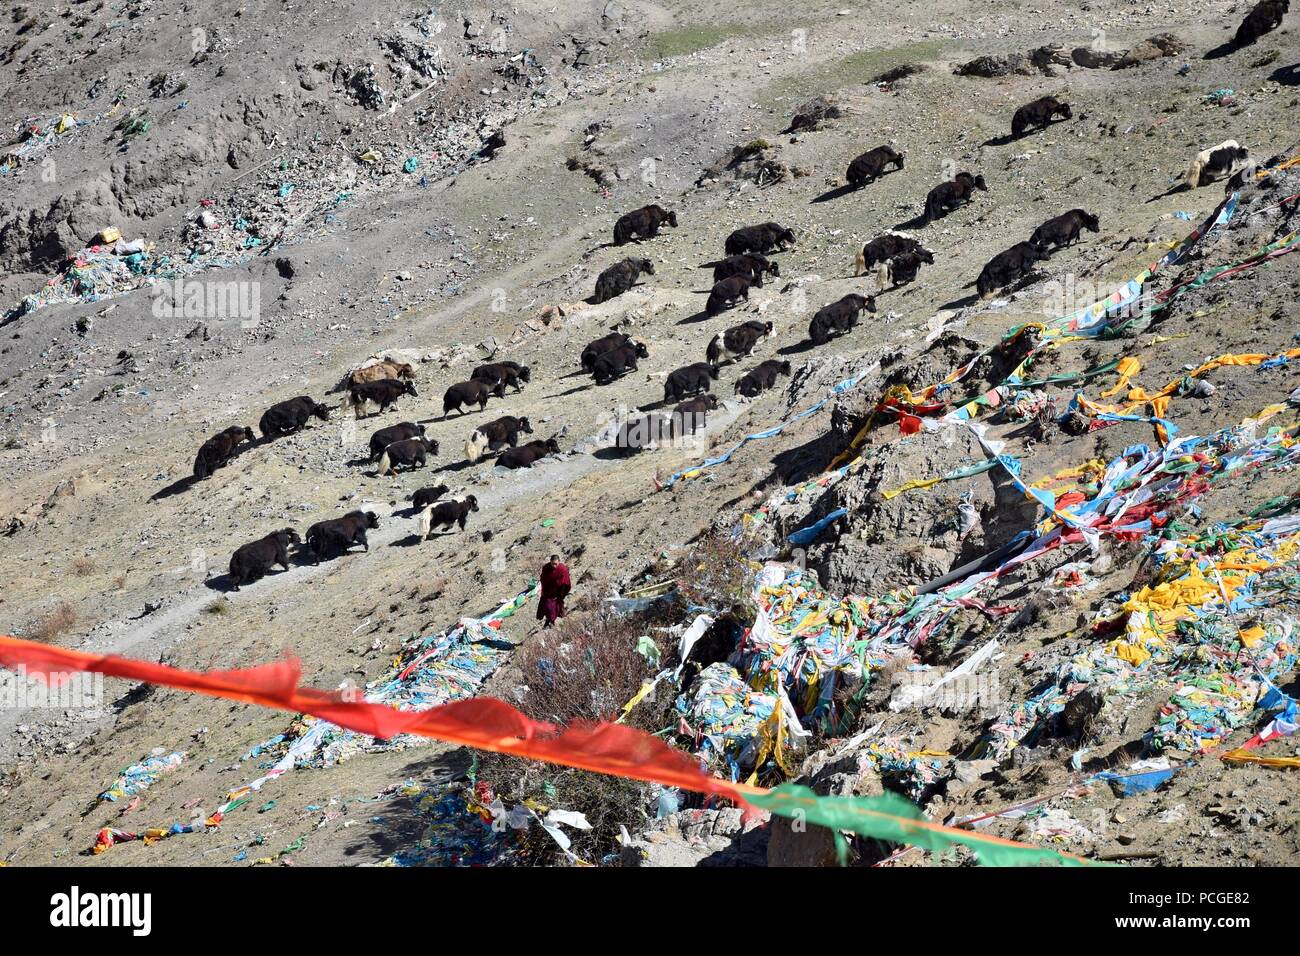 Preghiera tibetano bandiere rettangolari colorate vestiti, utilizzare per benedire la campagna circostante, al vento, allevamento di yak in background. Foto Stock